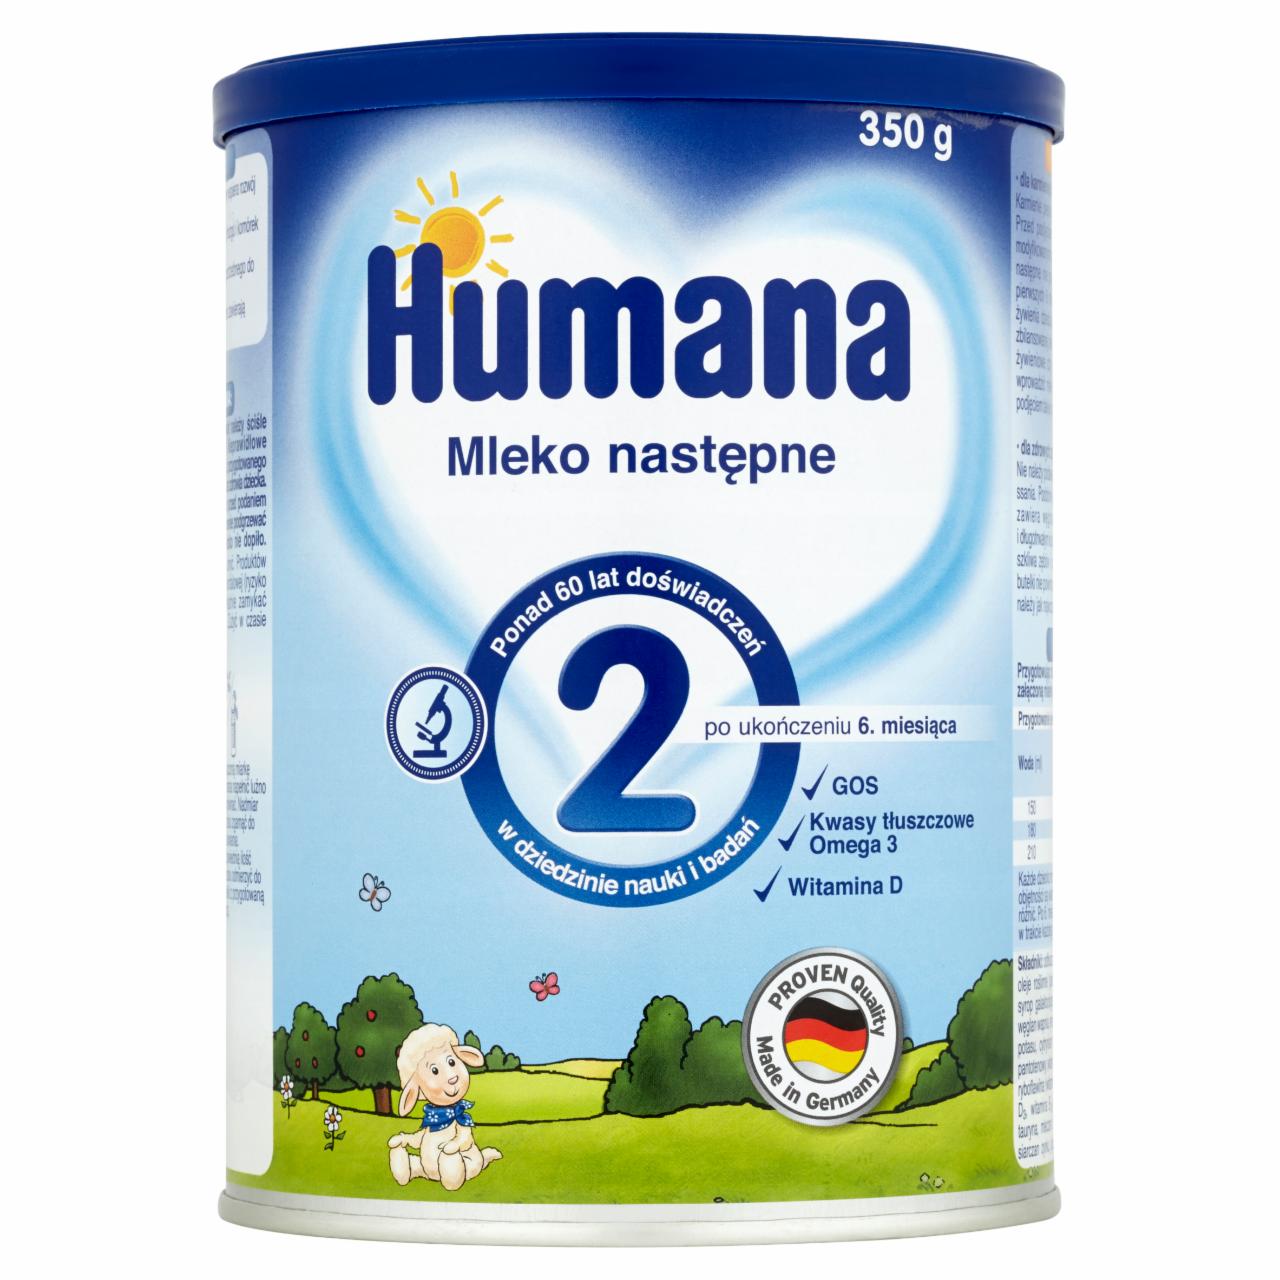 Zdjęcia - Humana 2 Mleko następne po ukończeniu 6. miesiąca 350 g